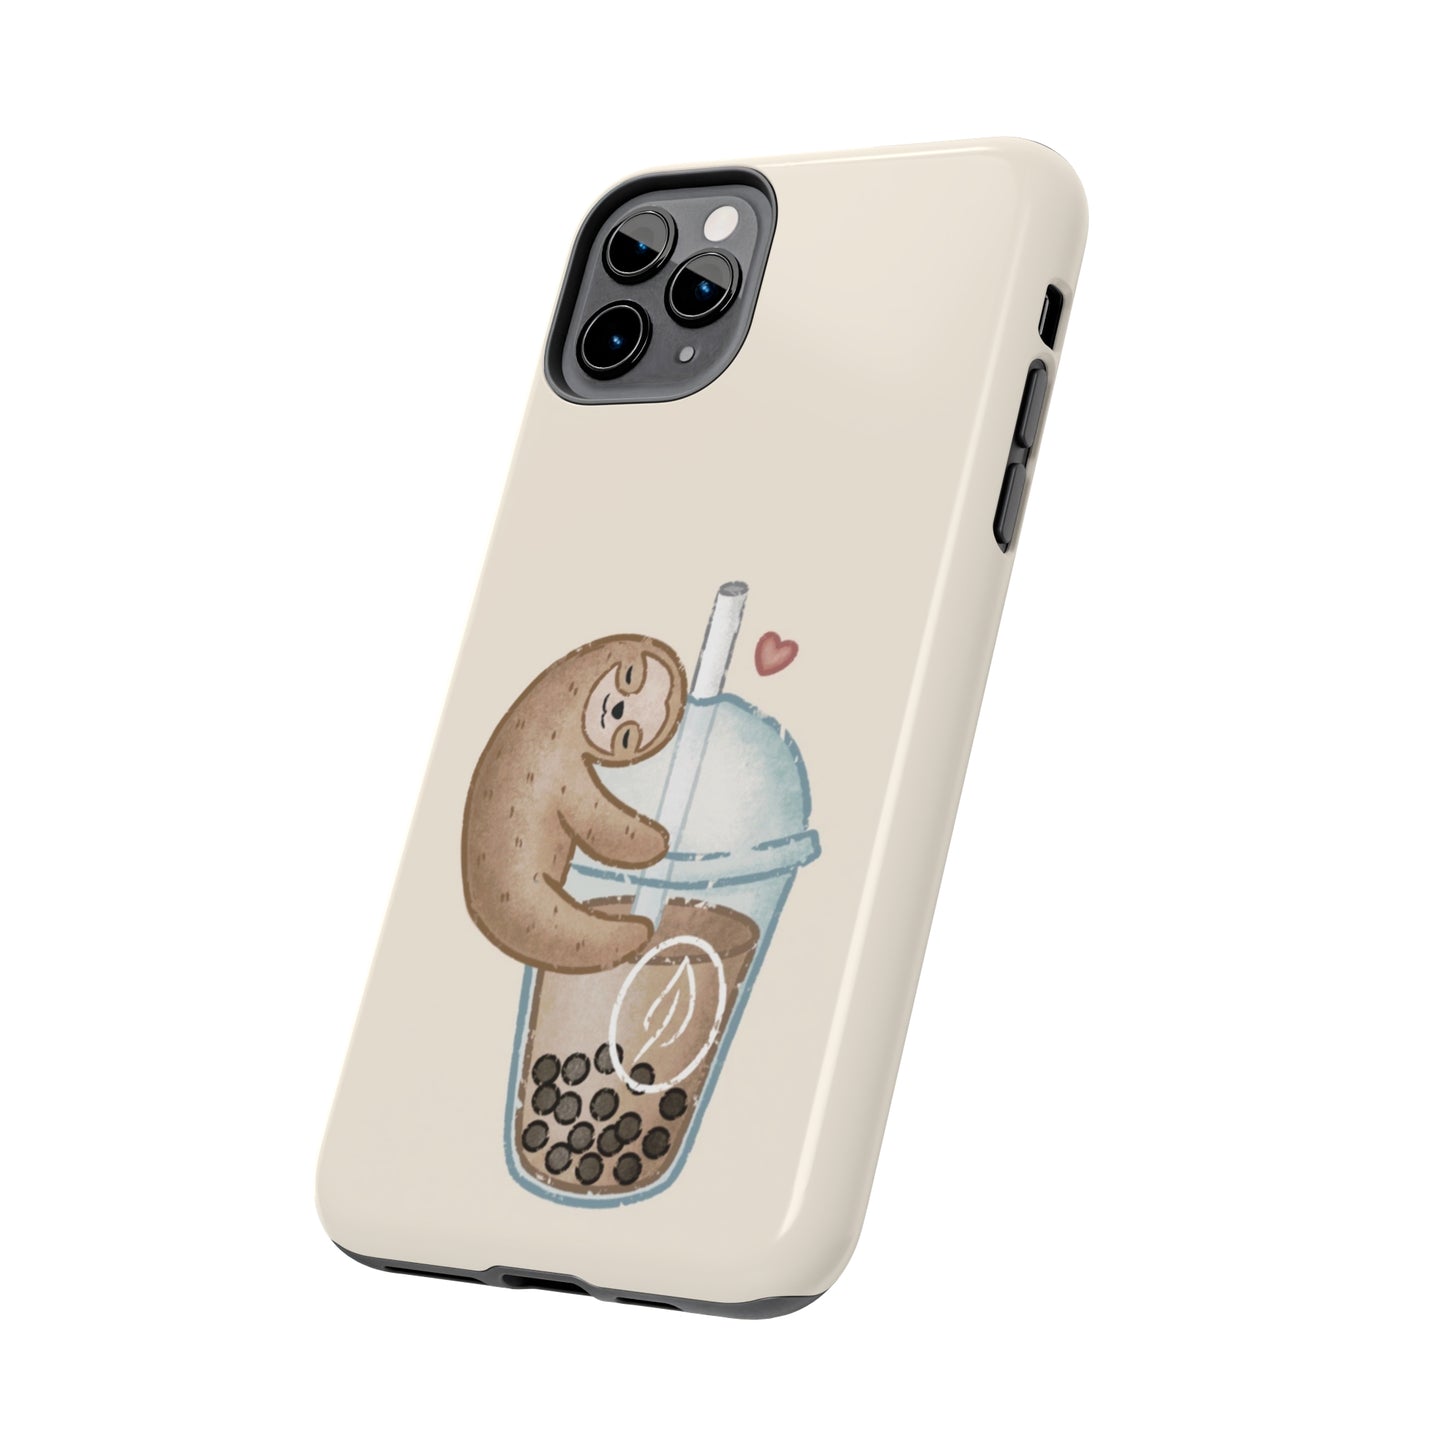 Boba Sloth Tough iPhone Case